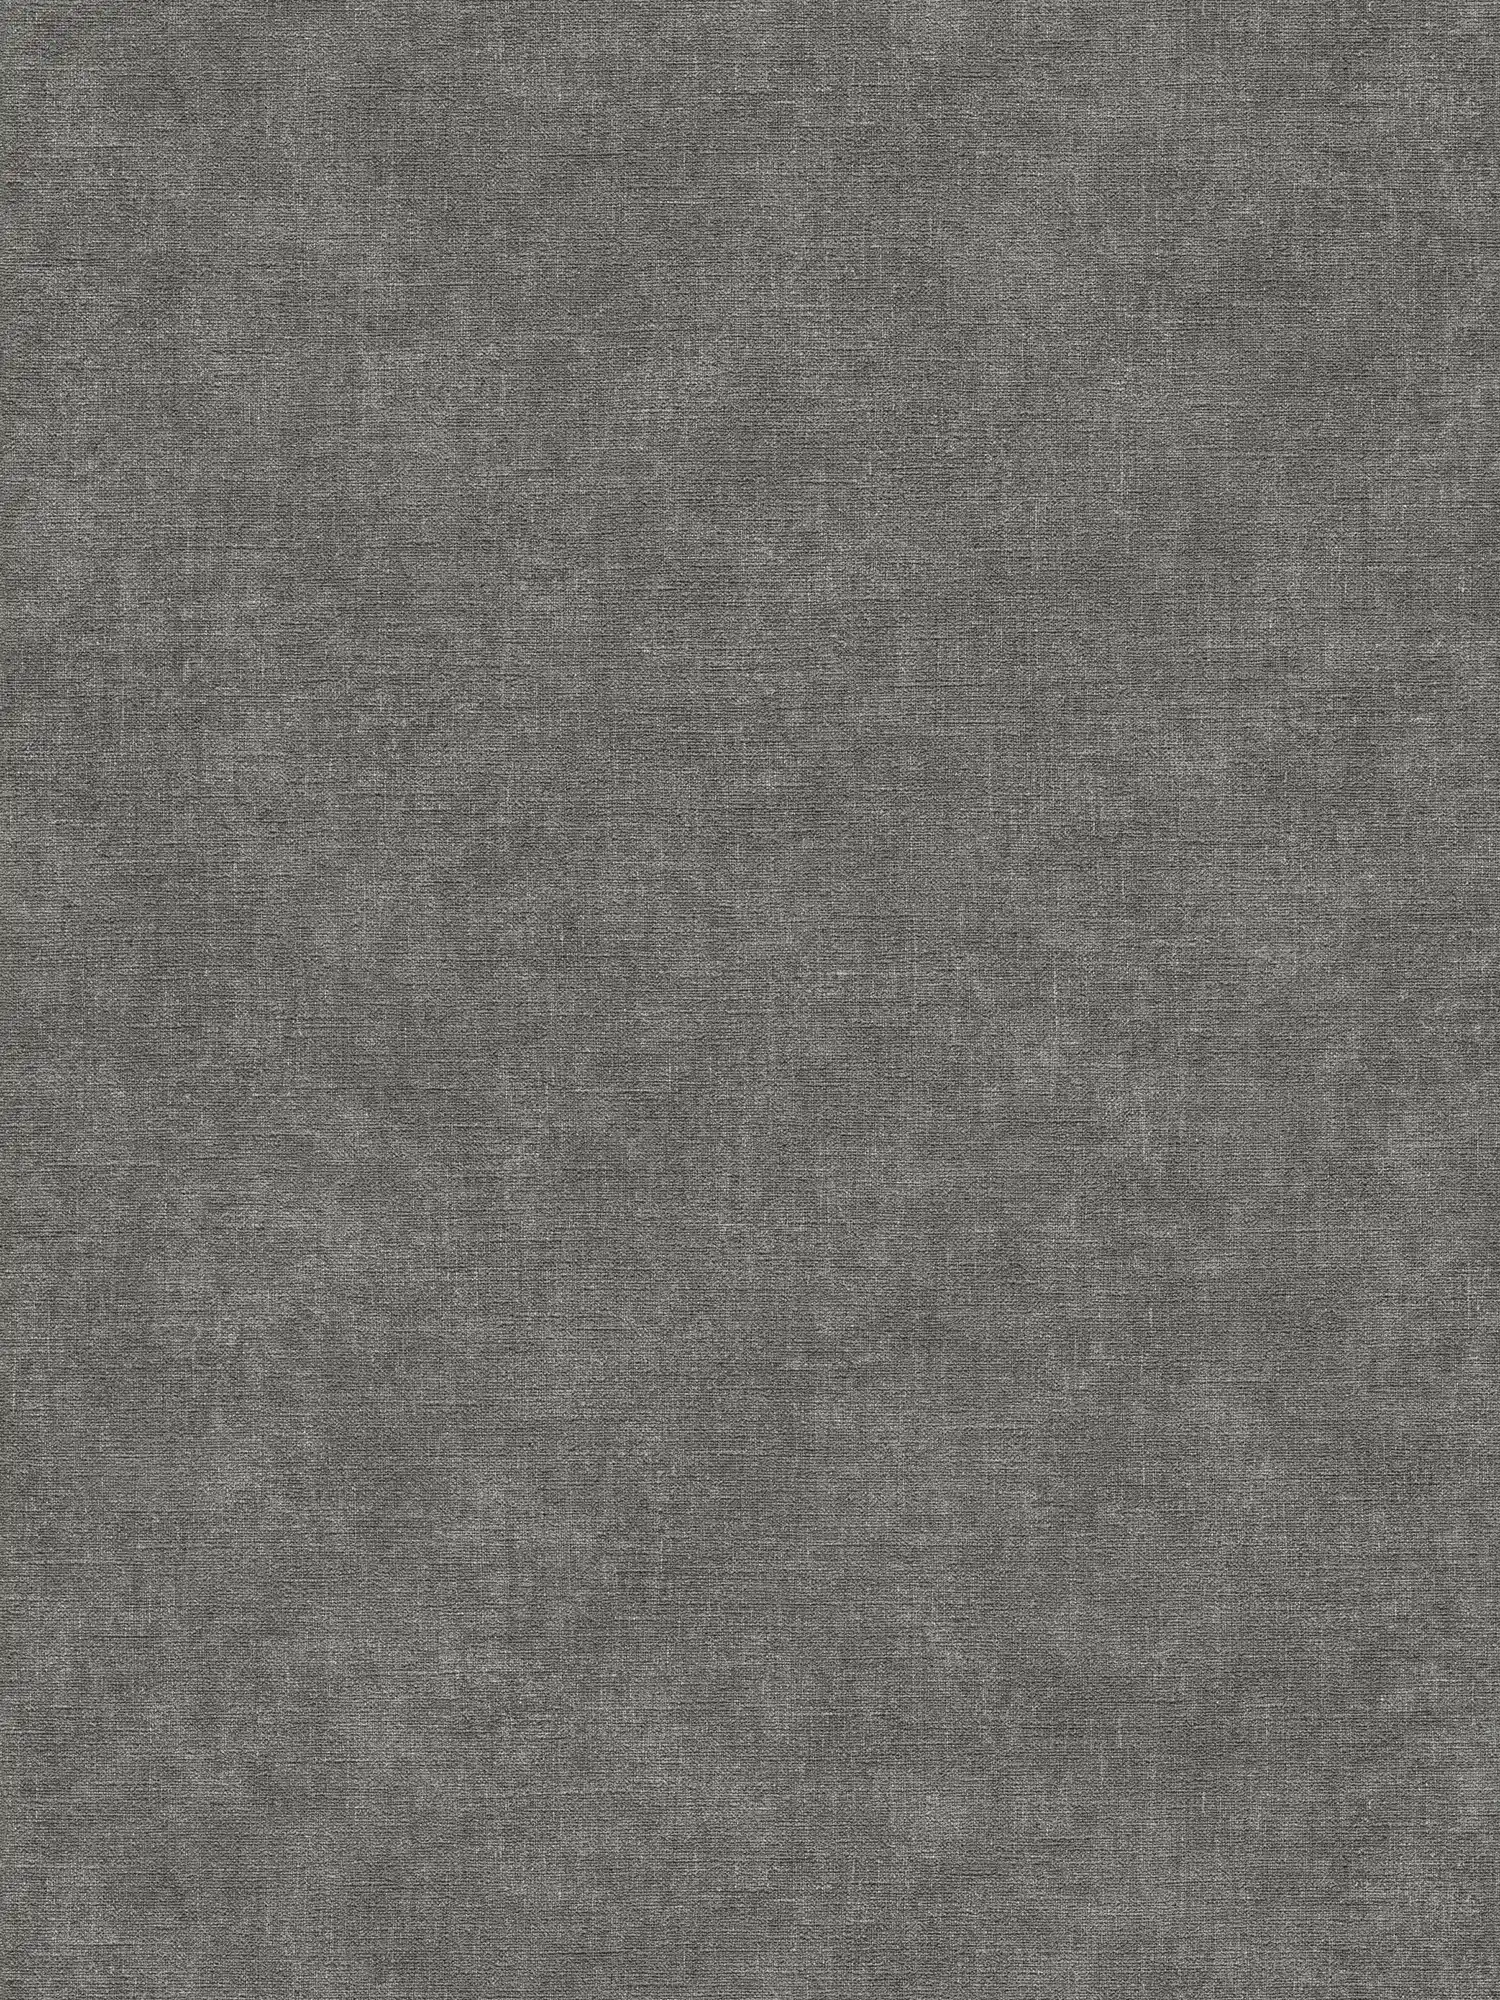 Effen vliesbehang in gipslook - zwart, grijs
